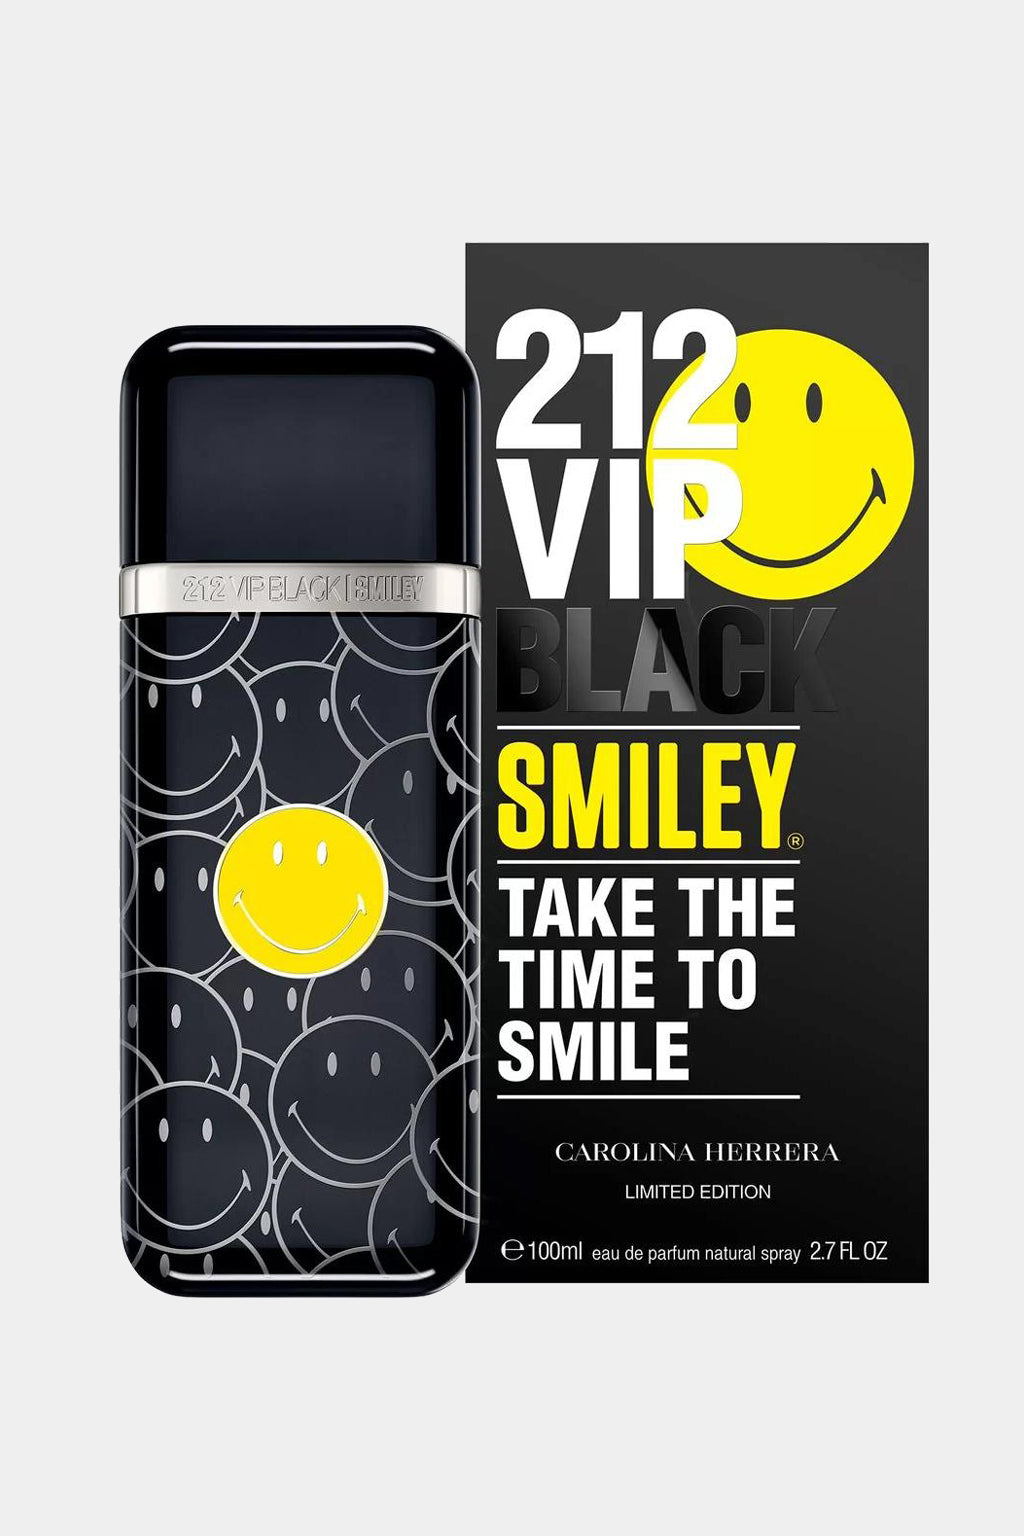 Carolina Herrera - 212 Vip Black Smiley Limited Edition Eau de Parfum